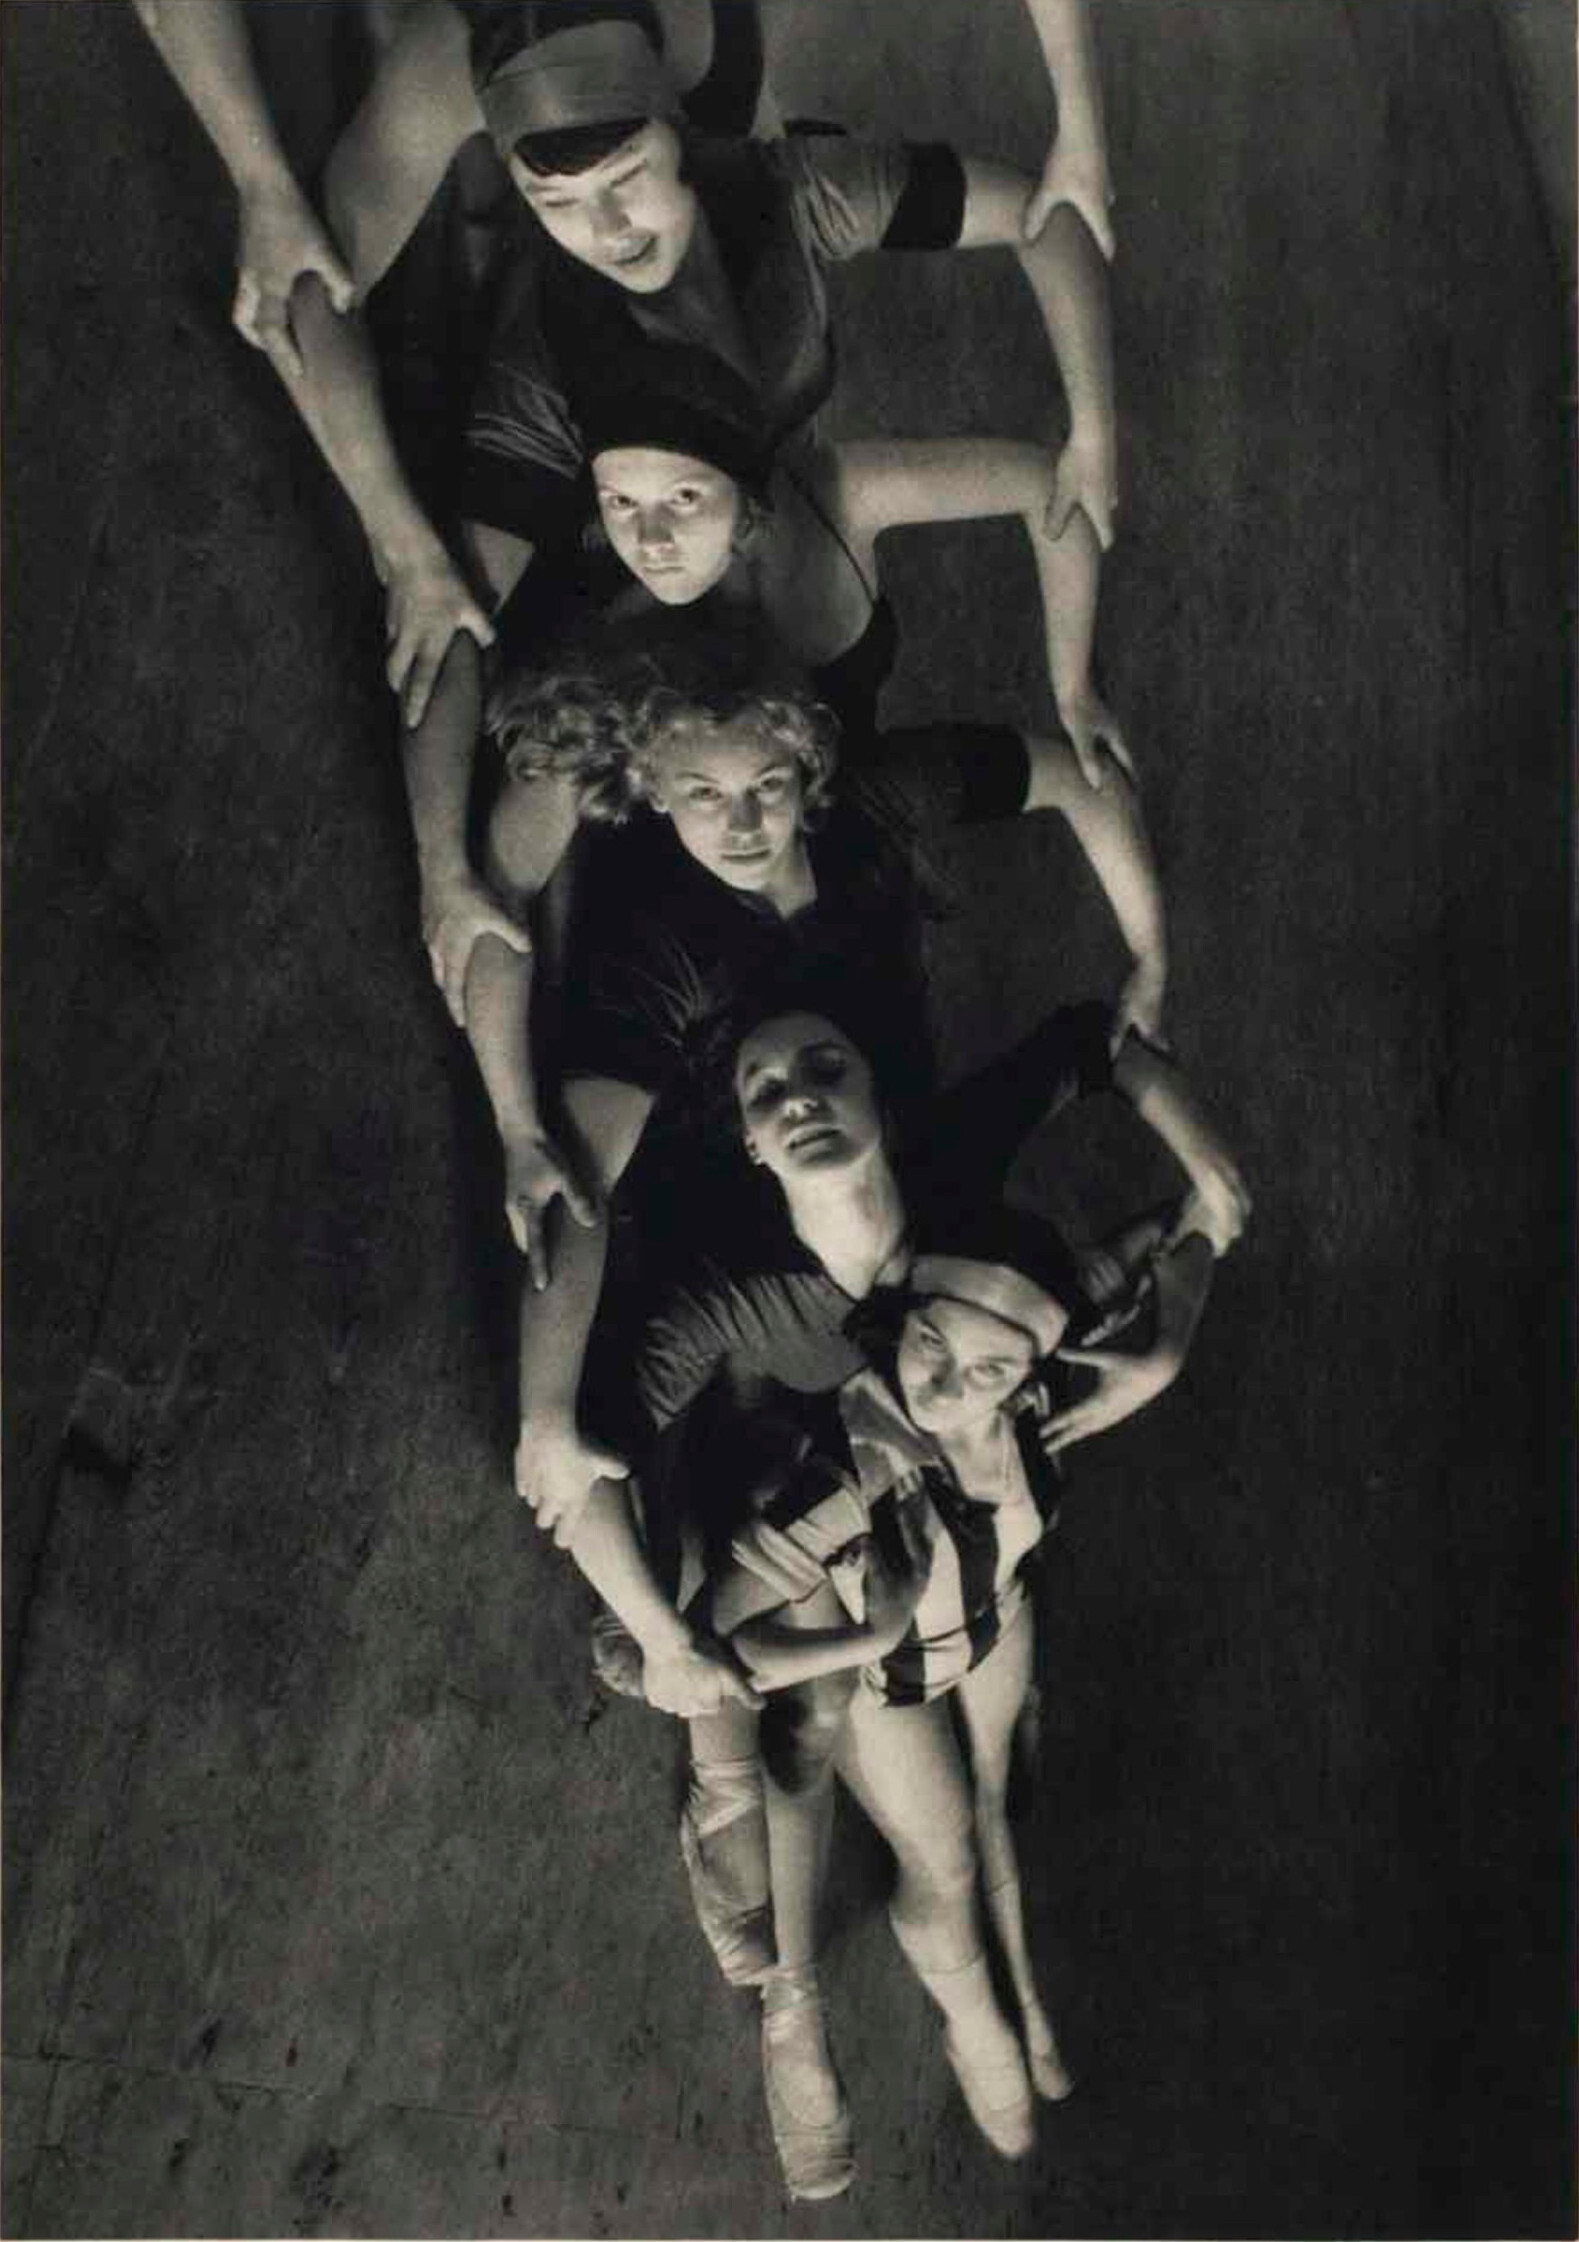 Движение цепного ремня, танец машин, Москва, 1931 год. Фотограф Маргарет Бурк-Уайт